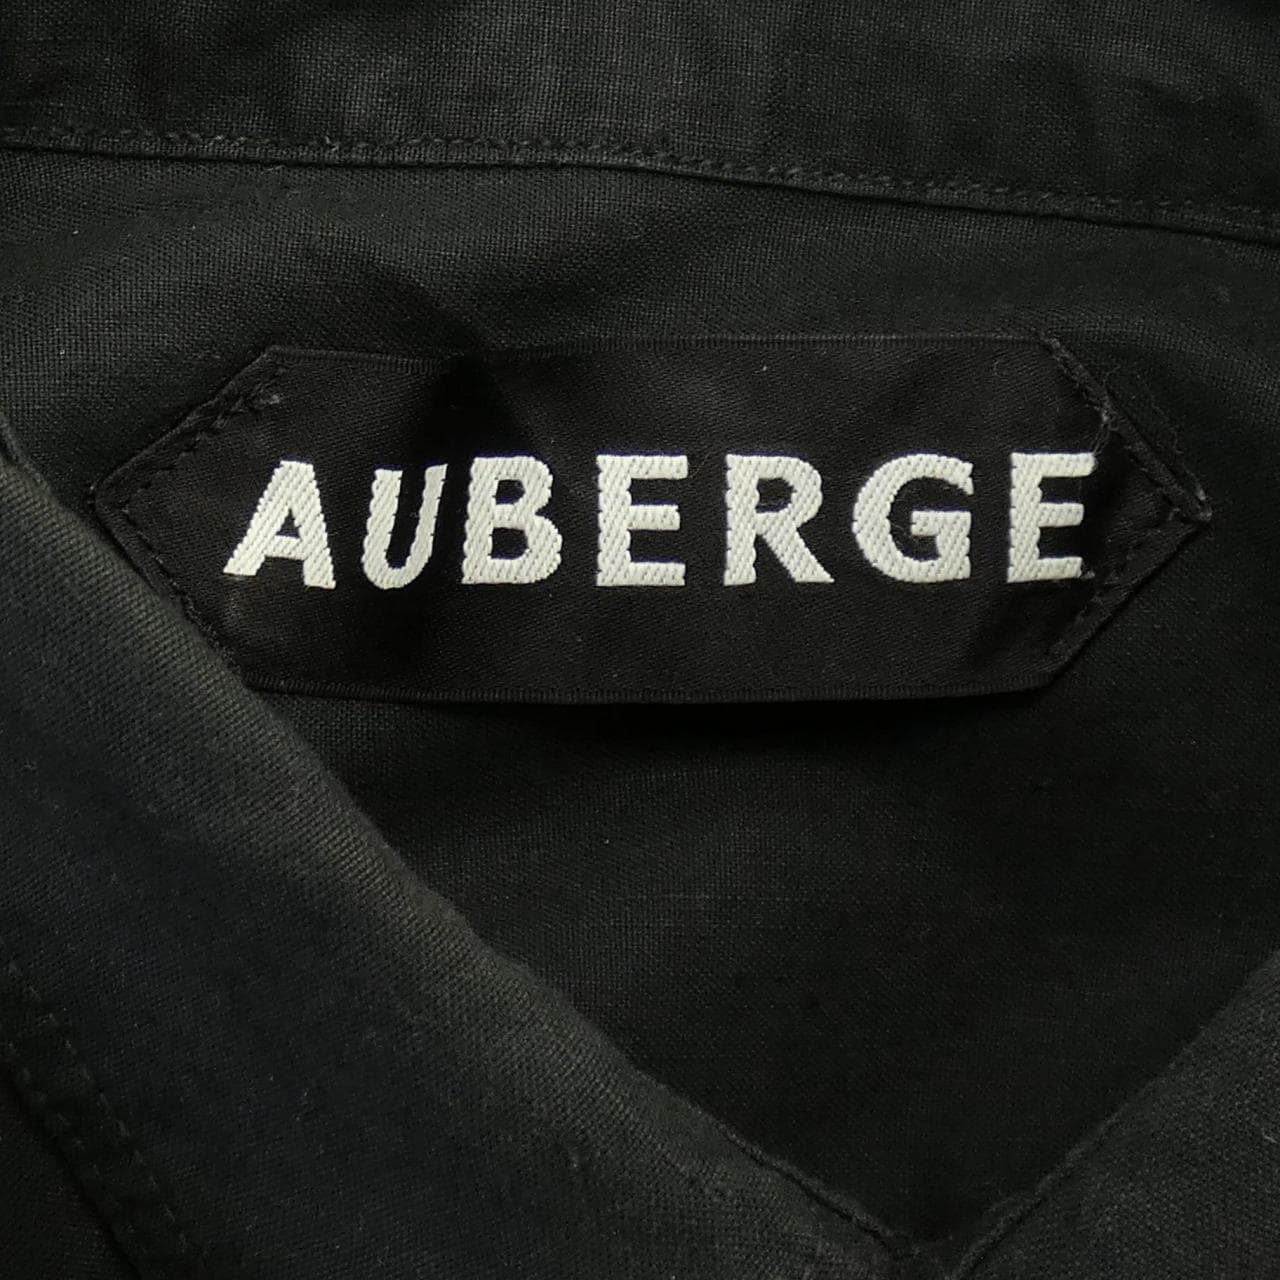 Auberge AUBERGE襯衫